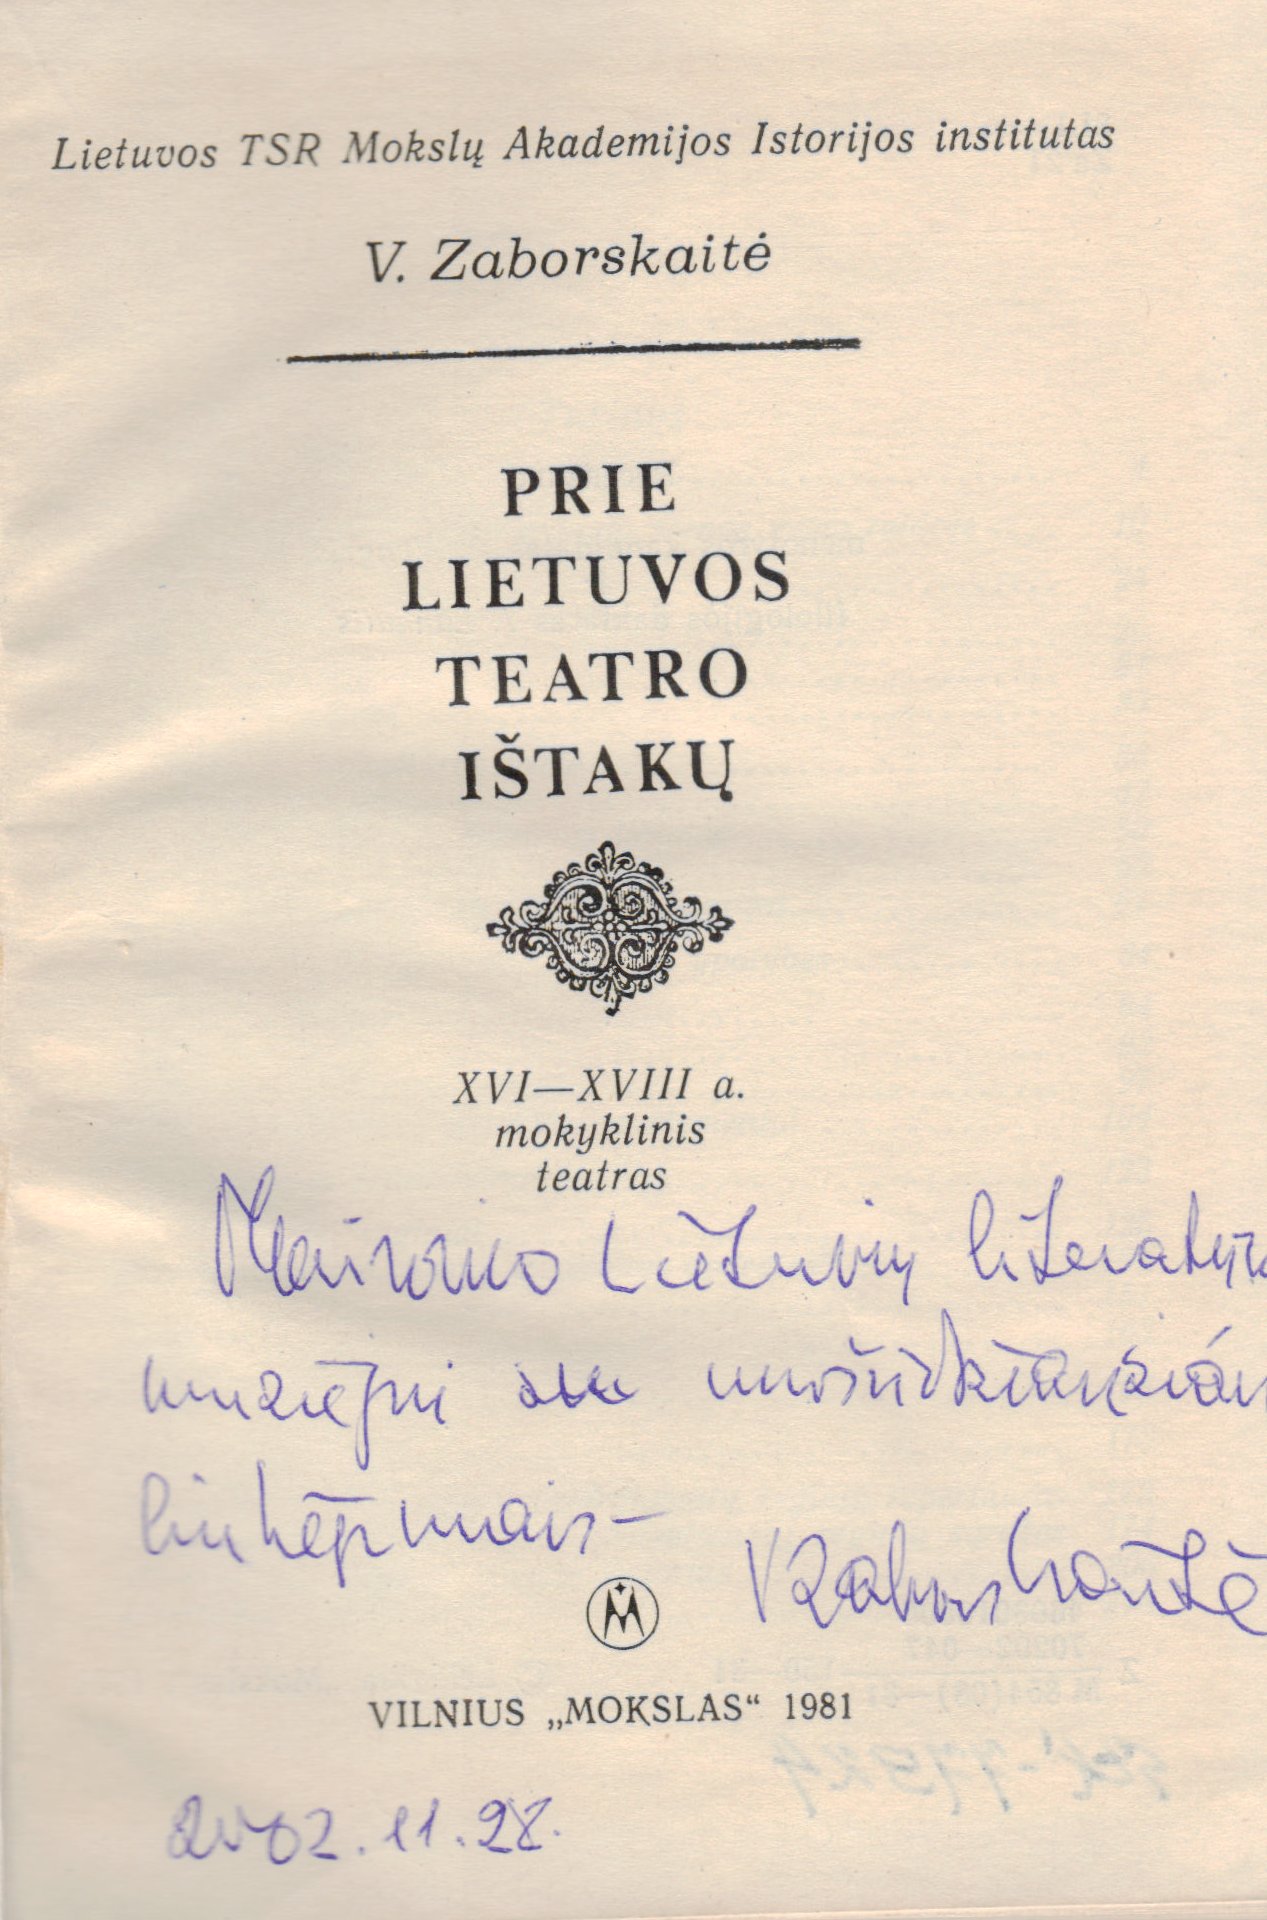 V. Zaborskaitė. Prie Lietuvos teatro ištakų. V. 1981. MLLM 77924